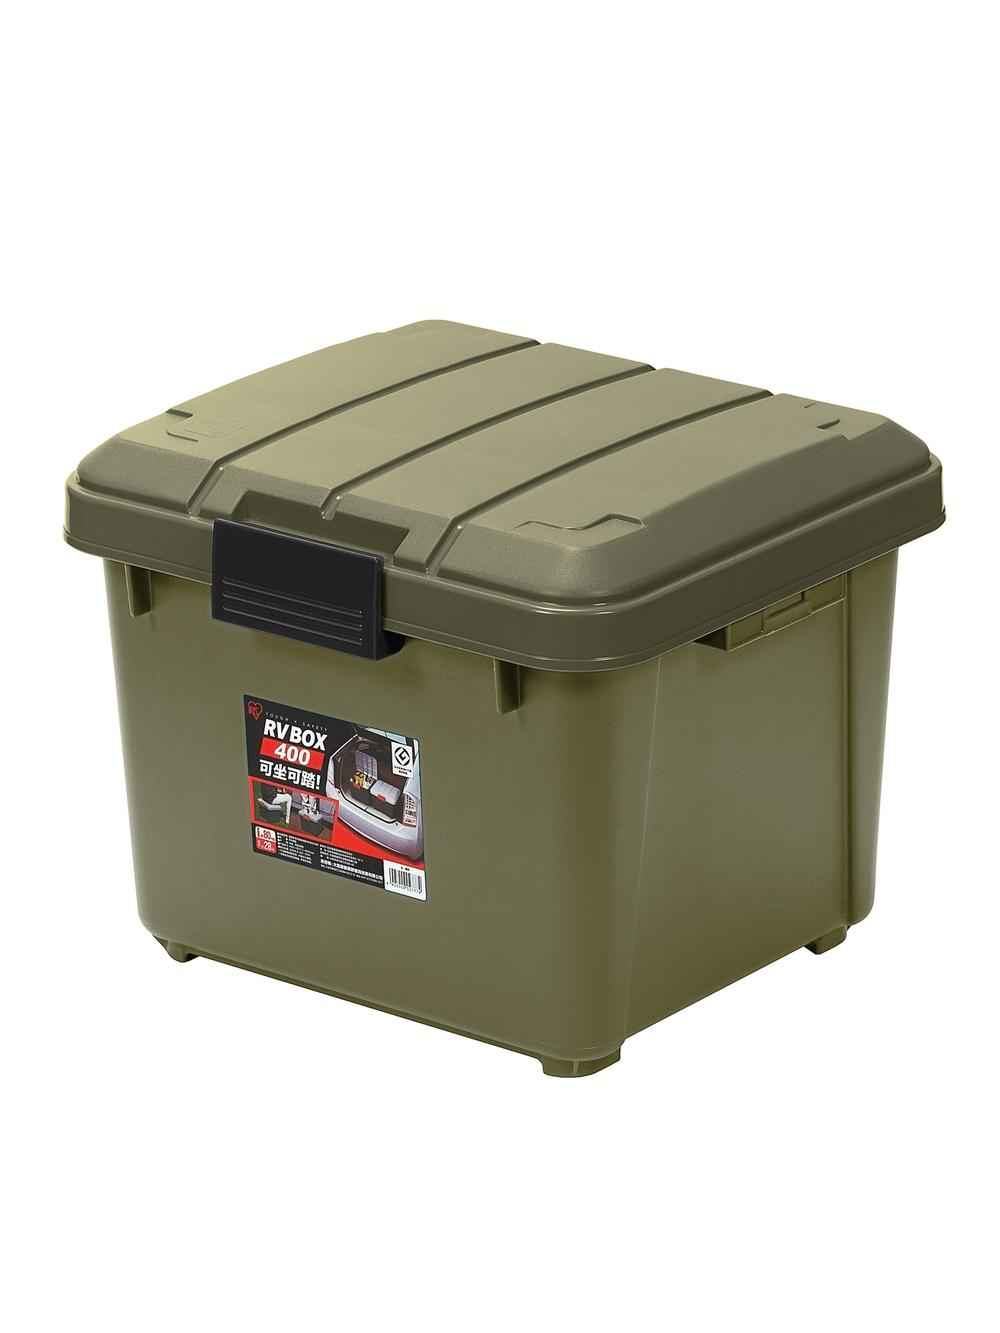 Ящик экспедиционный IRIS RV BOX 400, хаки, 28 литров 42x37,5x33 см.